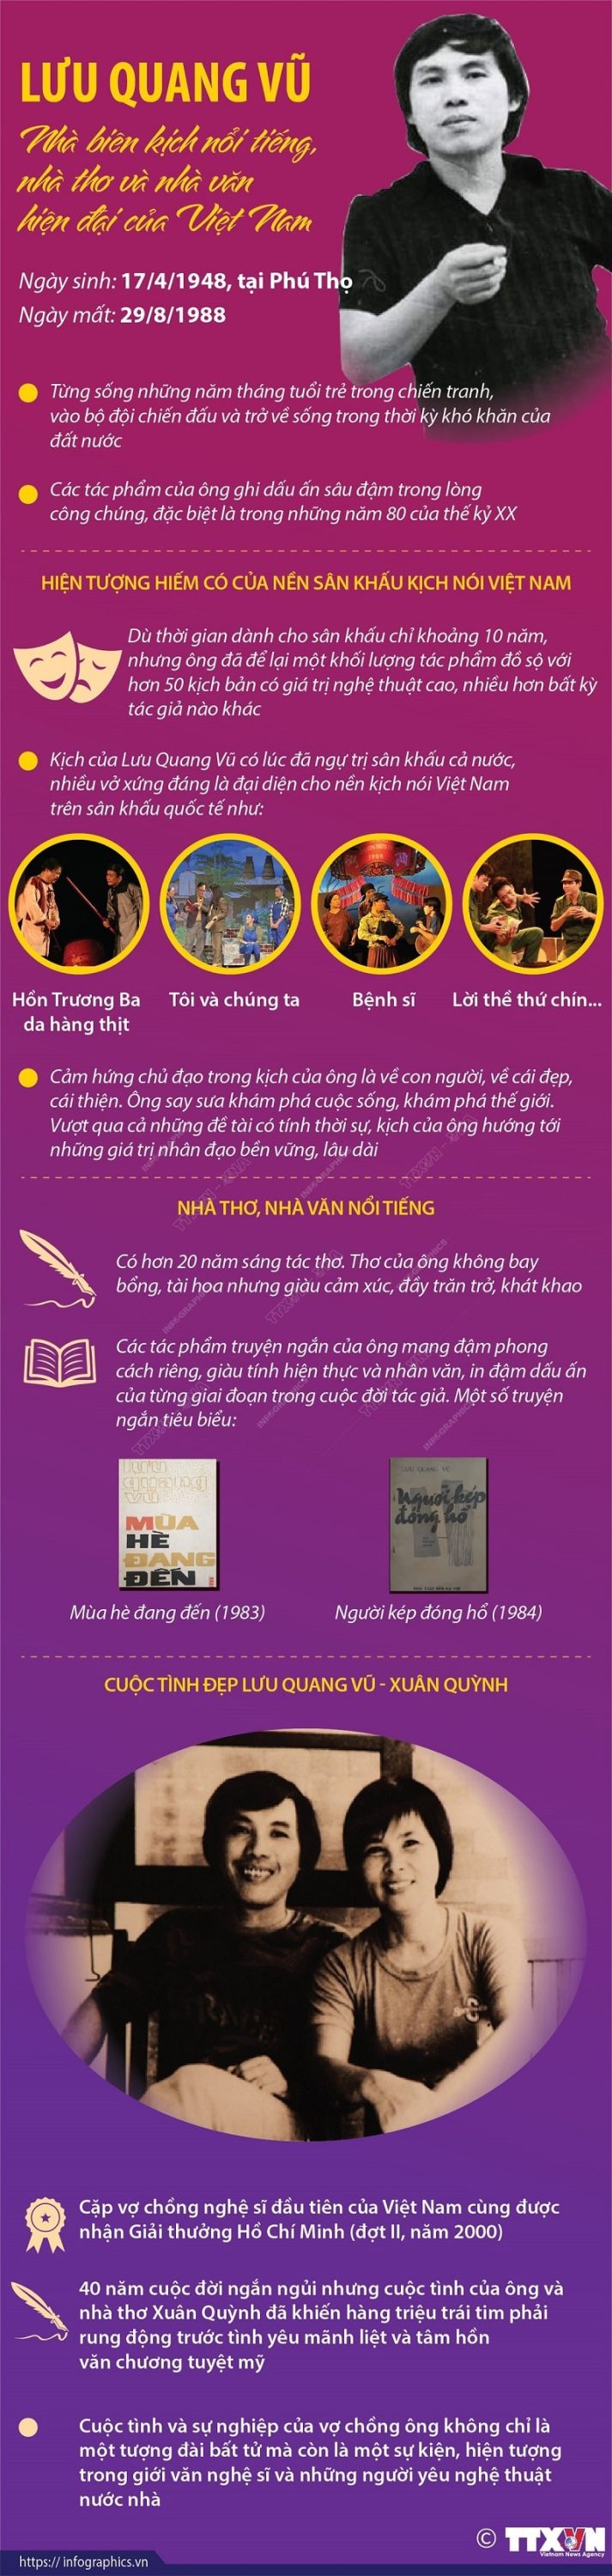 Chuong trinh nghe thuat tuong nho tac gia Luu Quang Vu min 713x3000 - Chương trình nghệ thuật tưởng nhớ tác giả Lưu Quang Vũ